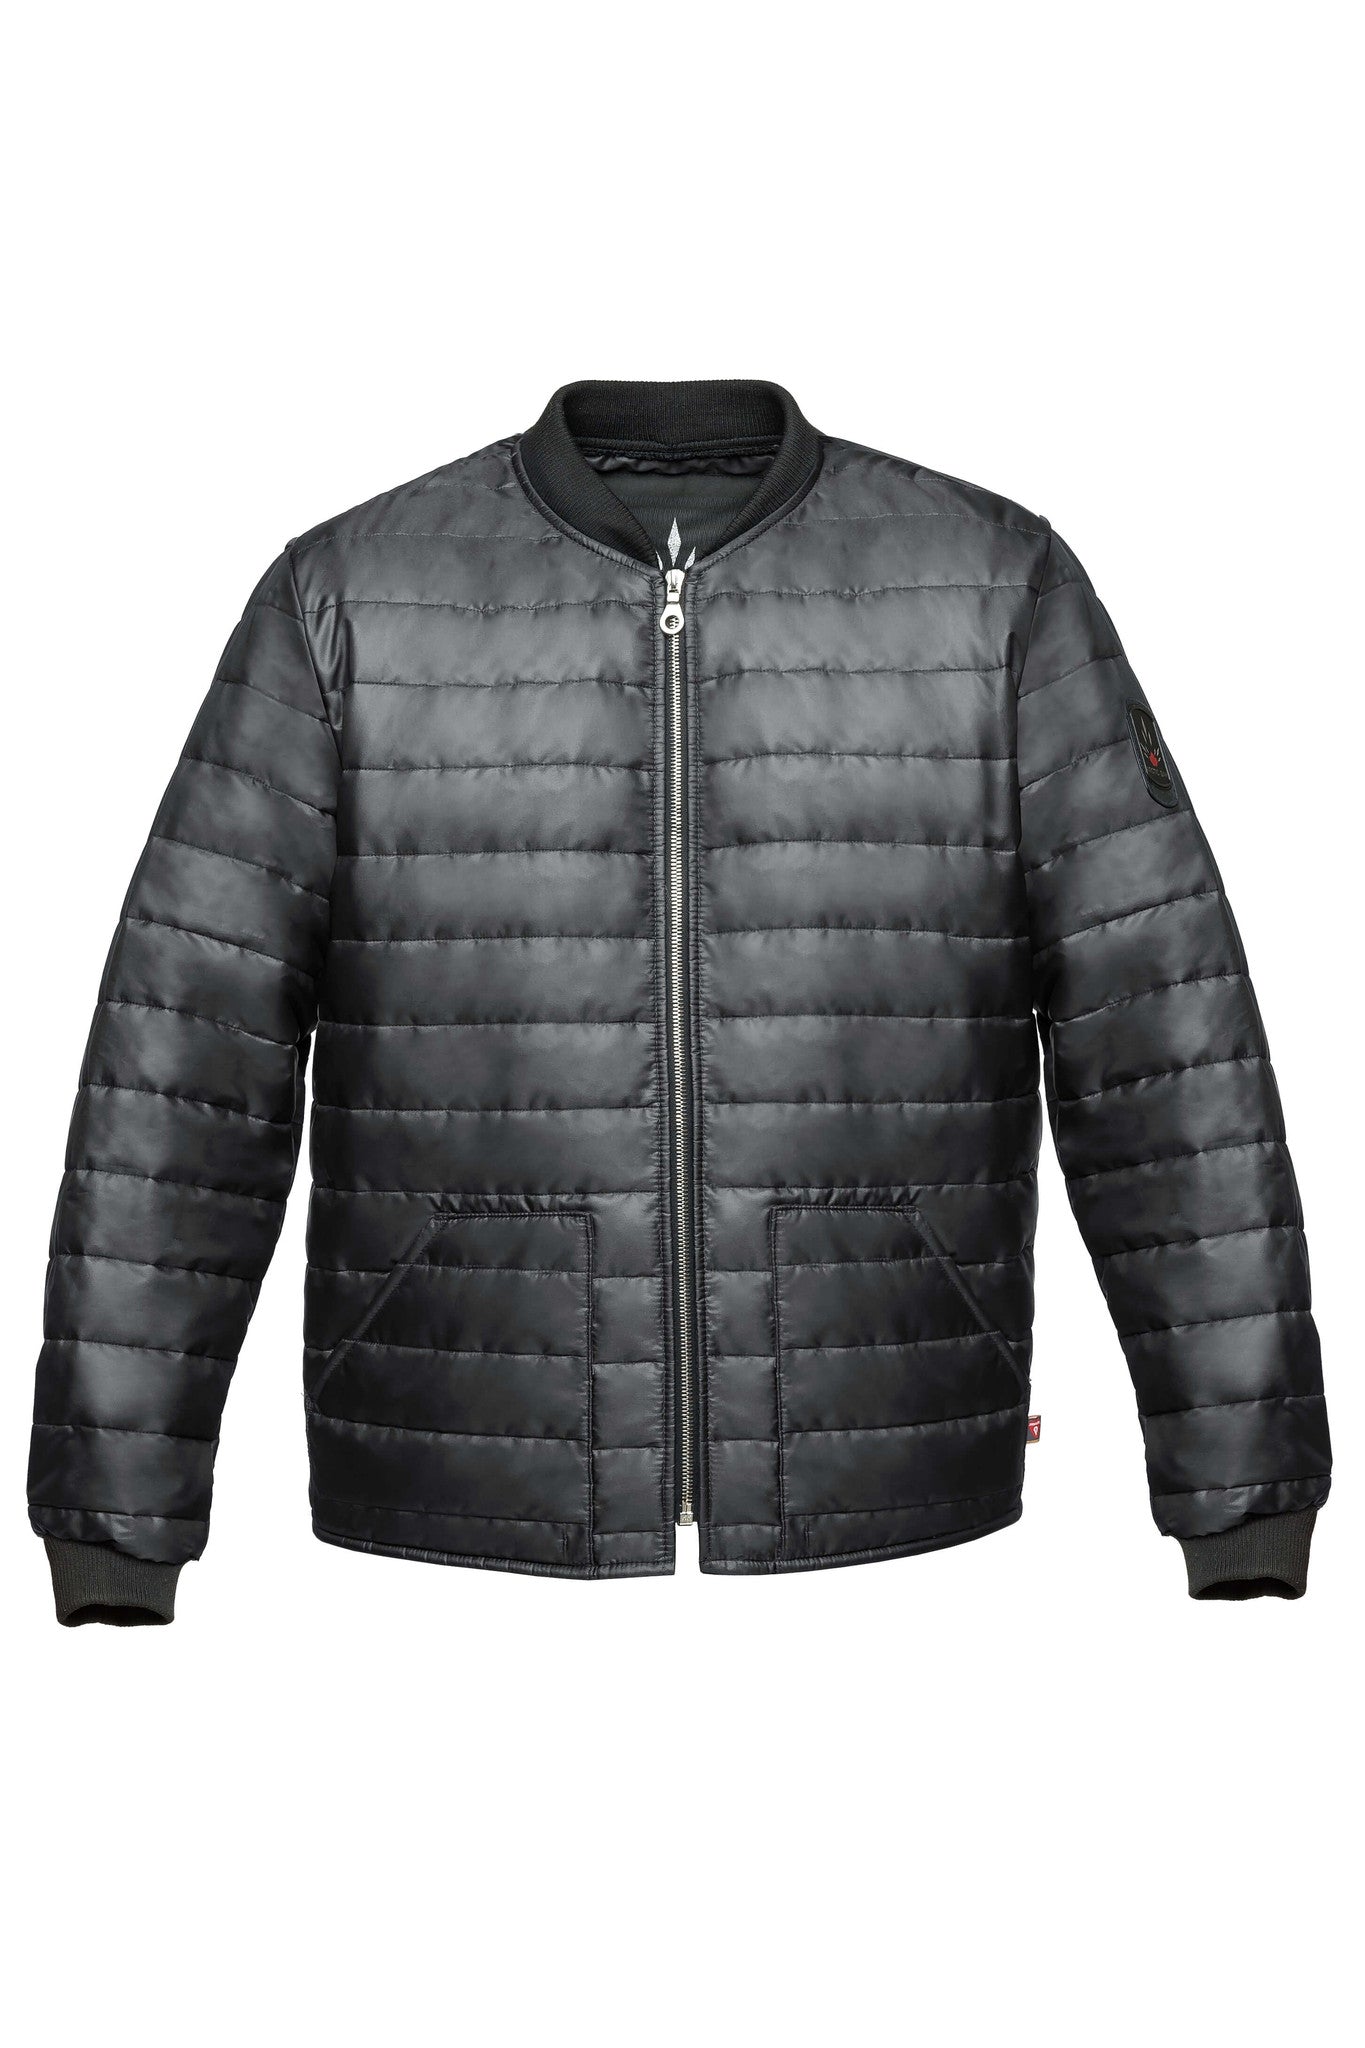 mens winter jackets under $50